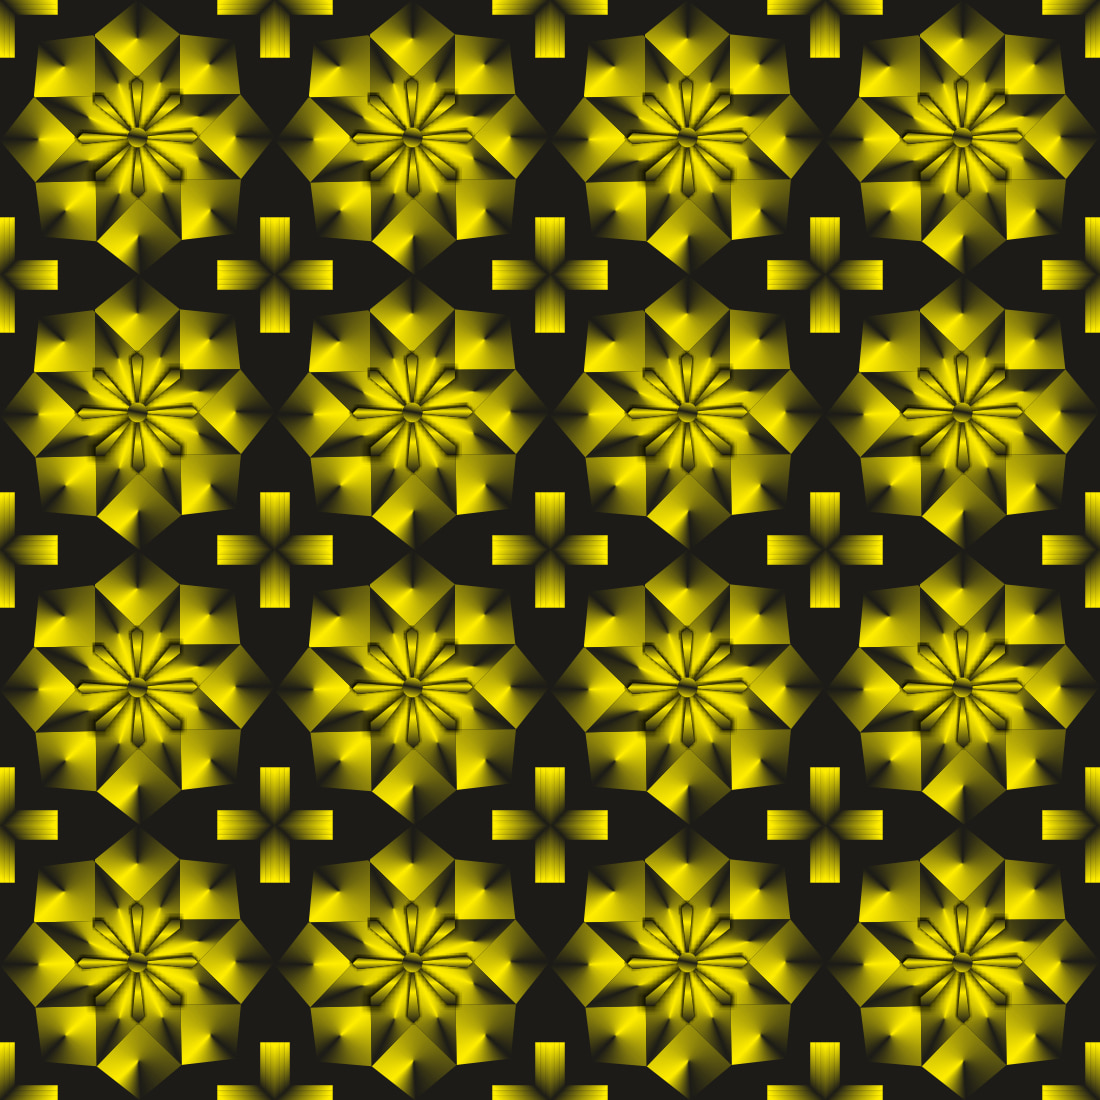 Digital-Flora-Pattern-Design cover image.